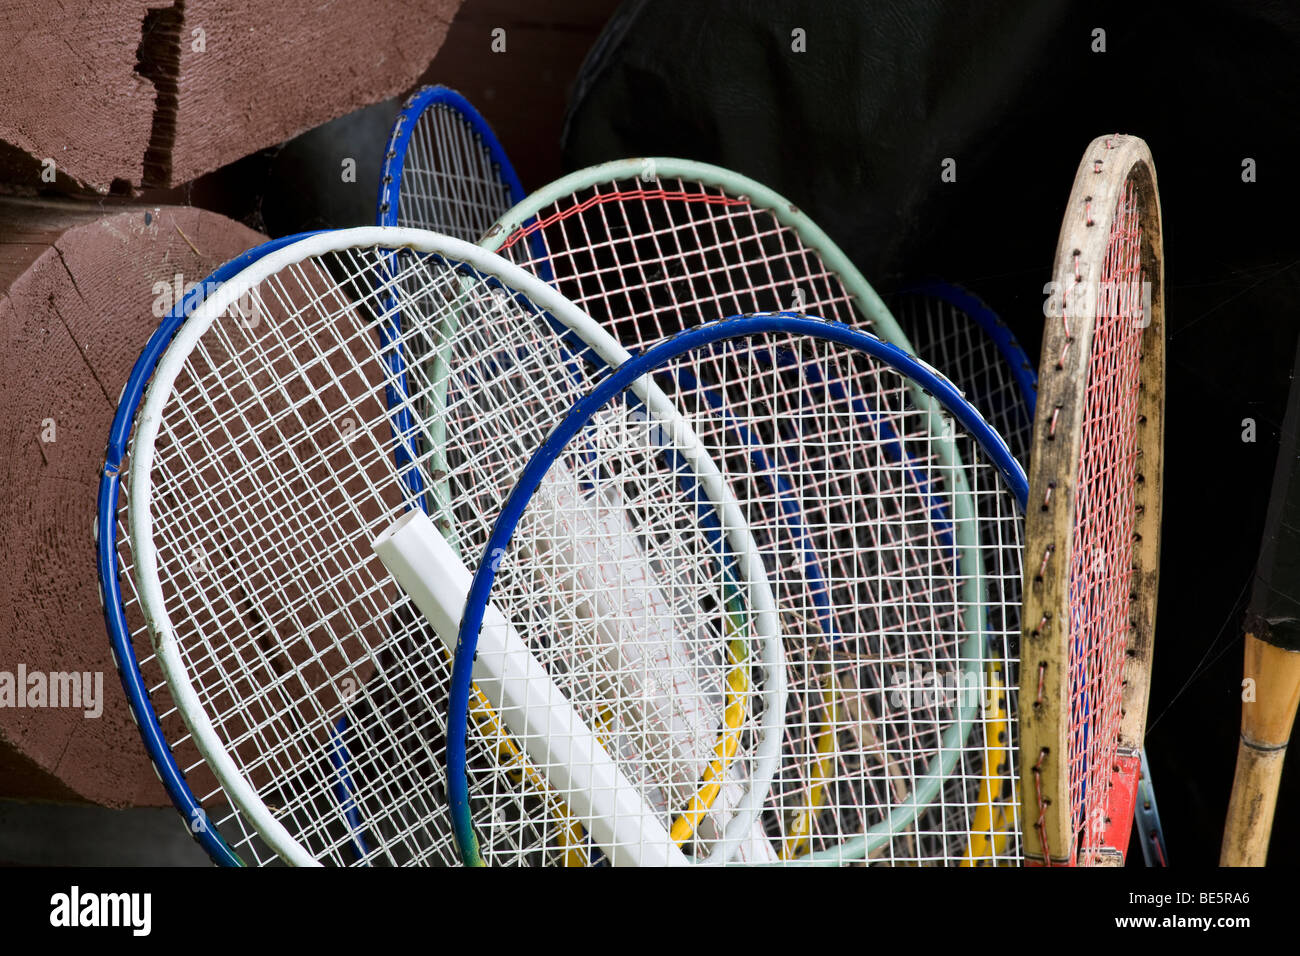 Raquetas de tenis y bádminton. Una colección de 6 badminton y tenis raquet contra los registros de una cabaña o cabina. Foto de stock